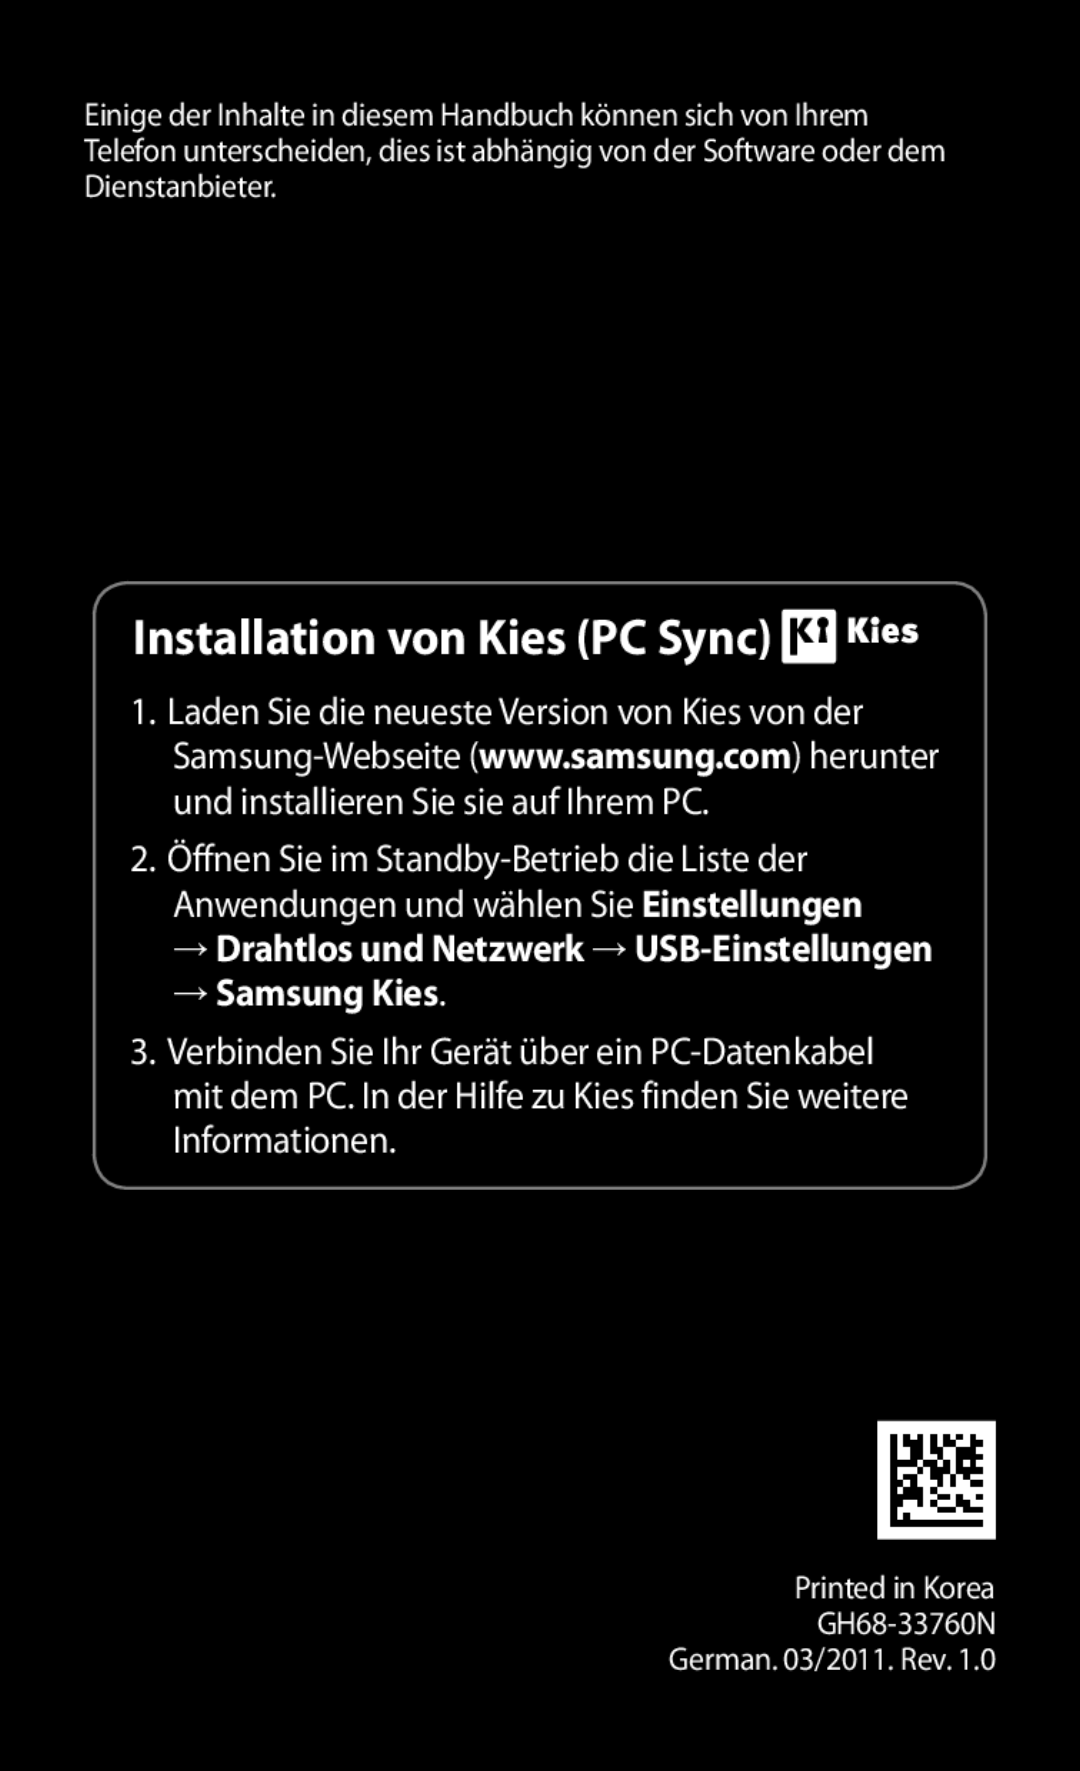 Samsung GT-I9000HKAEPL manual Installation von Kies PC Sync, → Samsung Kies, → Drahtlos und Netzwerk →USB-Einstellungen 